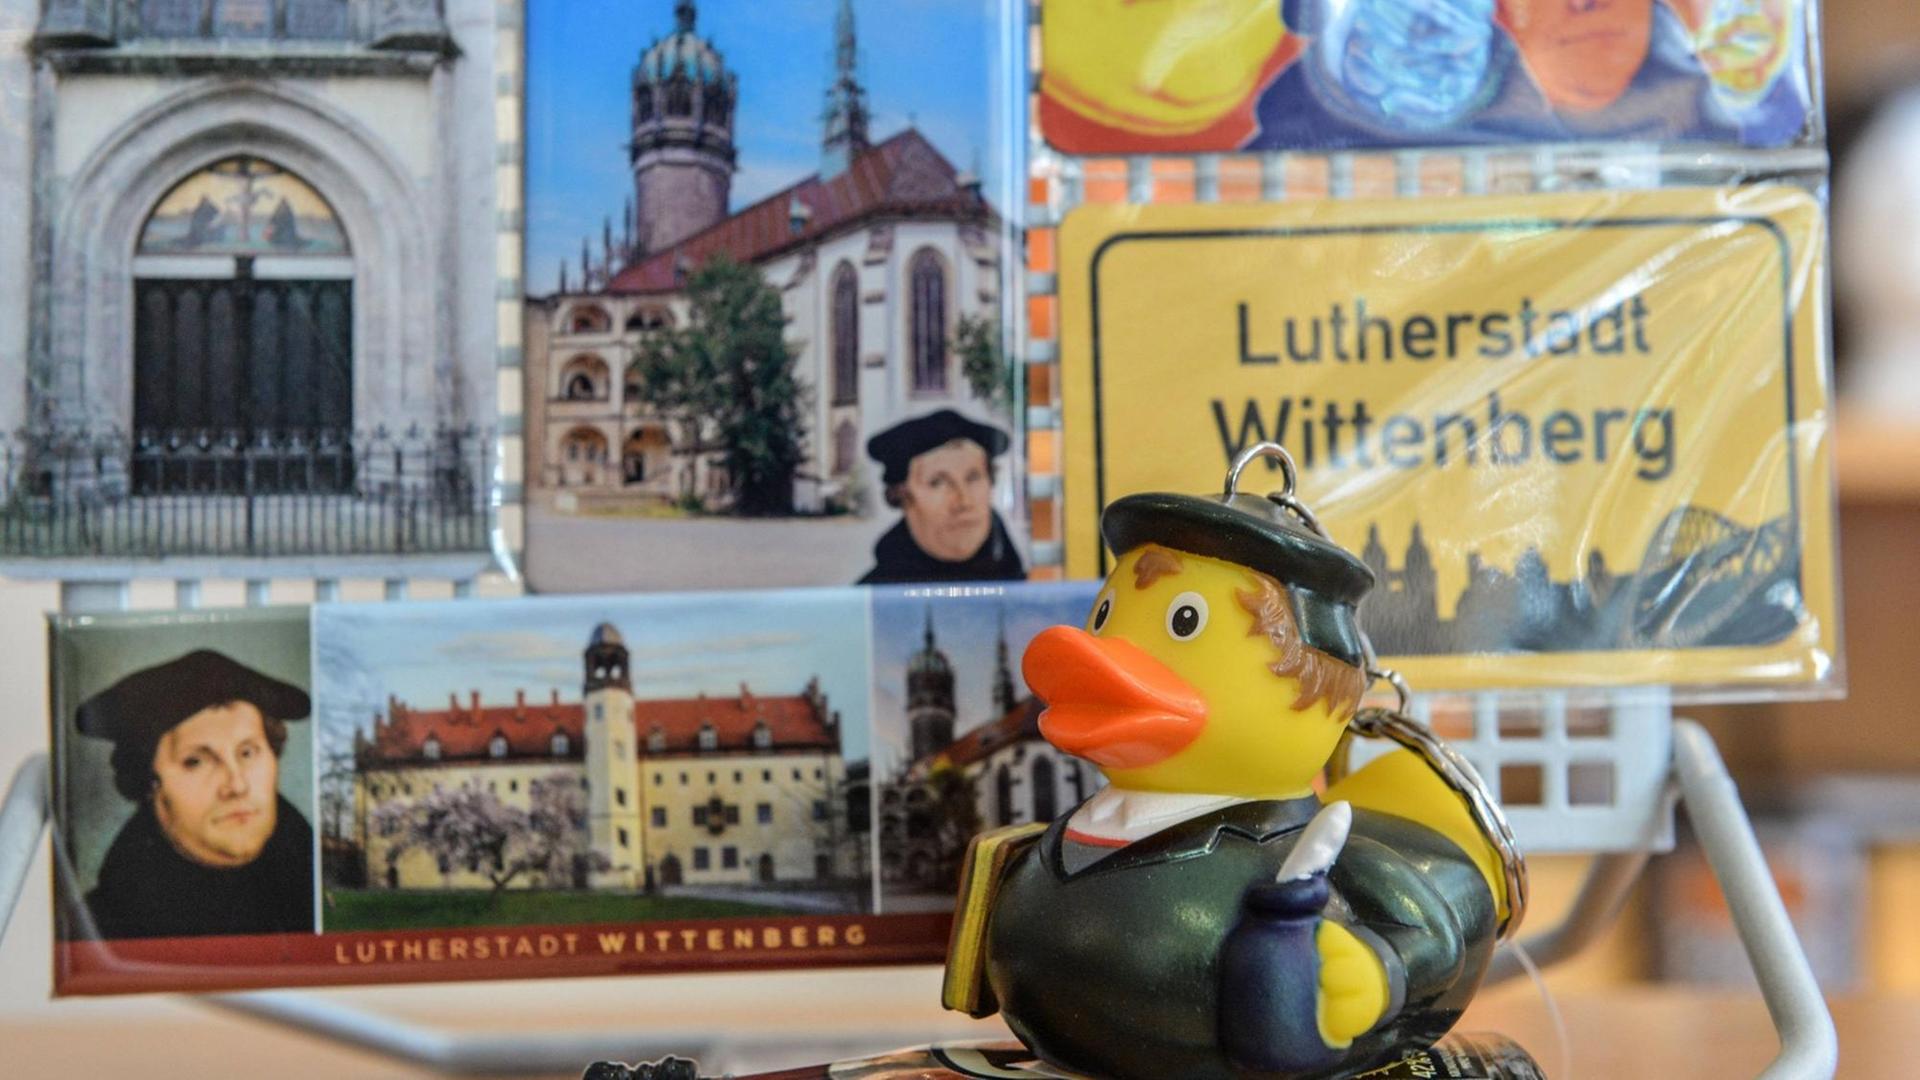 Luther-Souvenirs in Wittenberg. Statt Luther-Kult fordert Autor Erik Flügge lebendige Identifikationsfiguren in der evangelischen Kirche